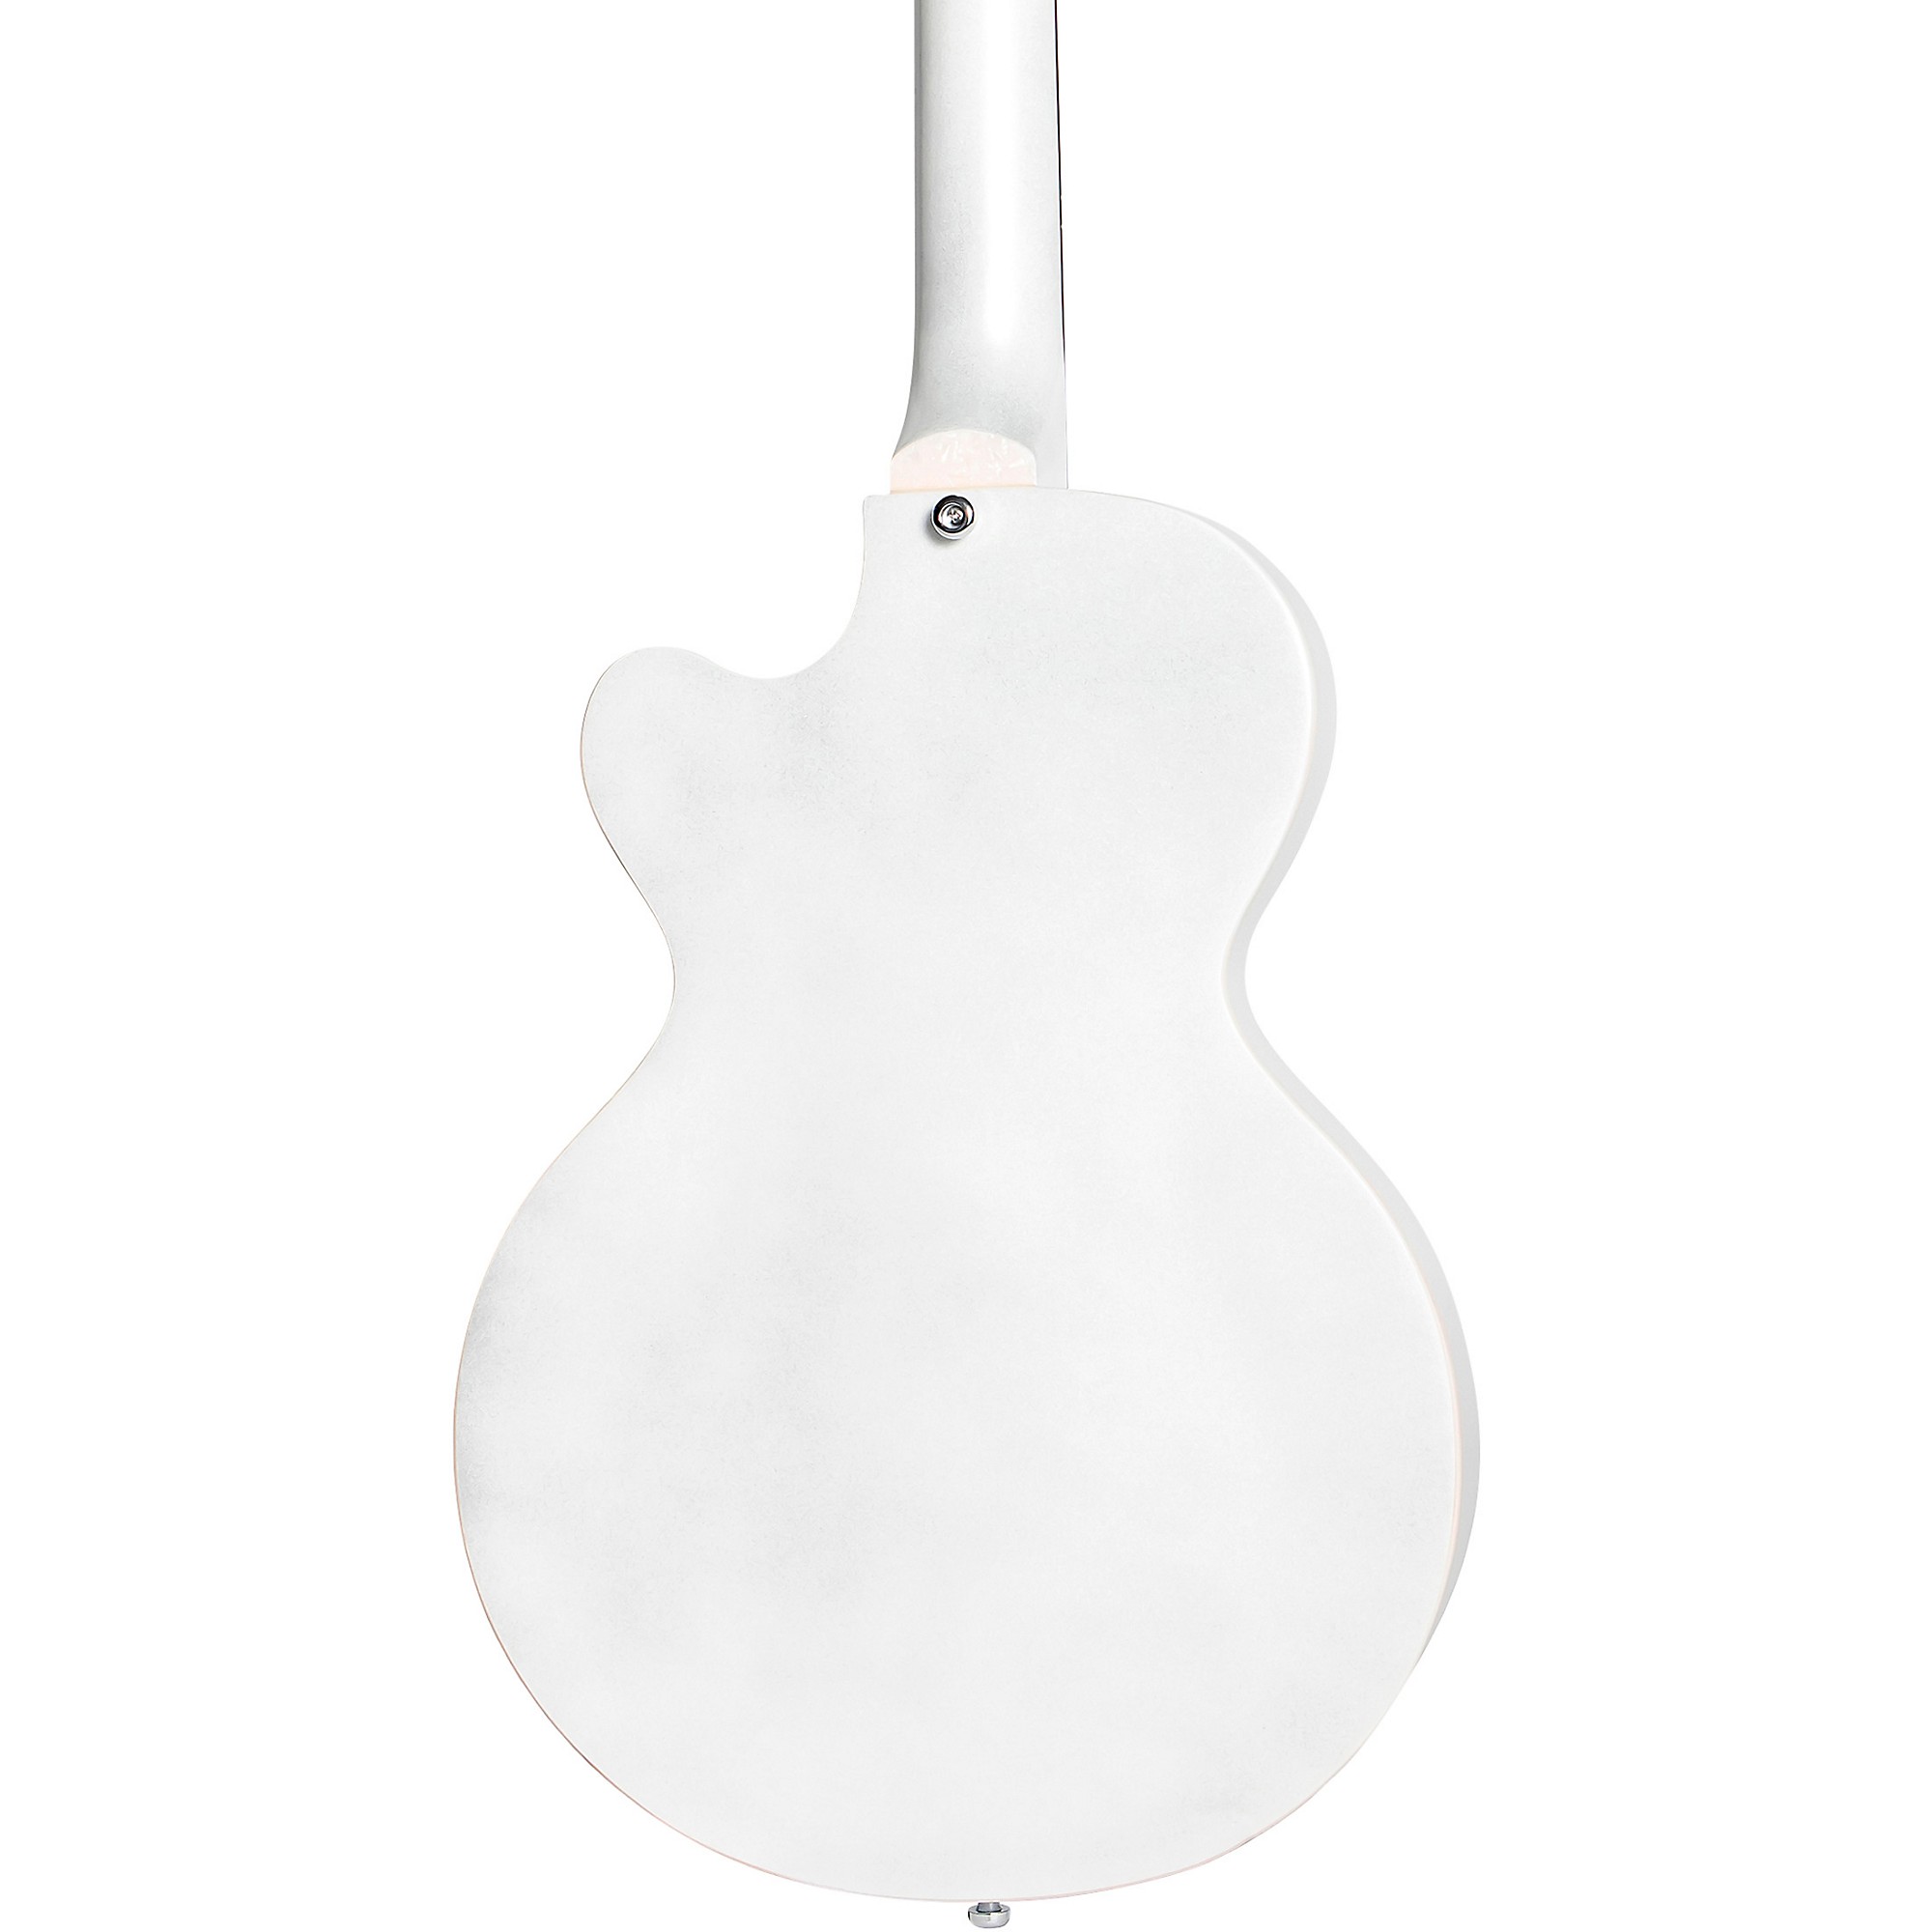 Клубный бас-гитара Hofner Ignition Series с короткой мензурой жемчужно-белого цвета